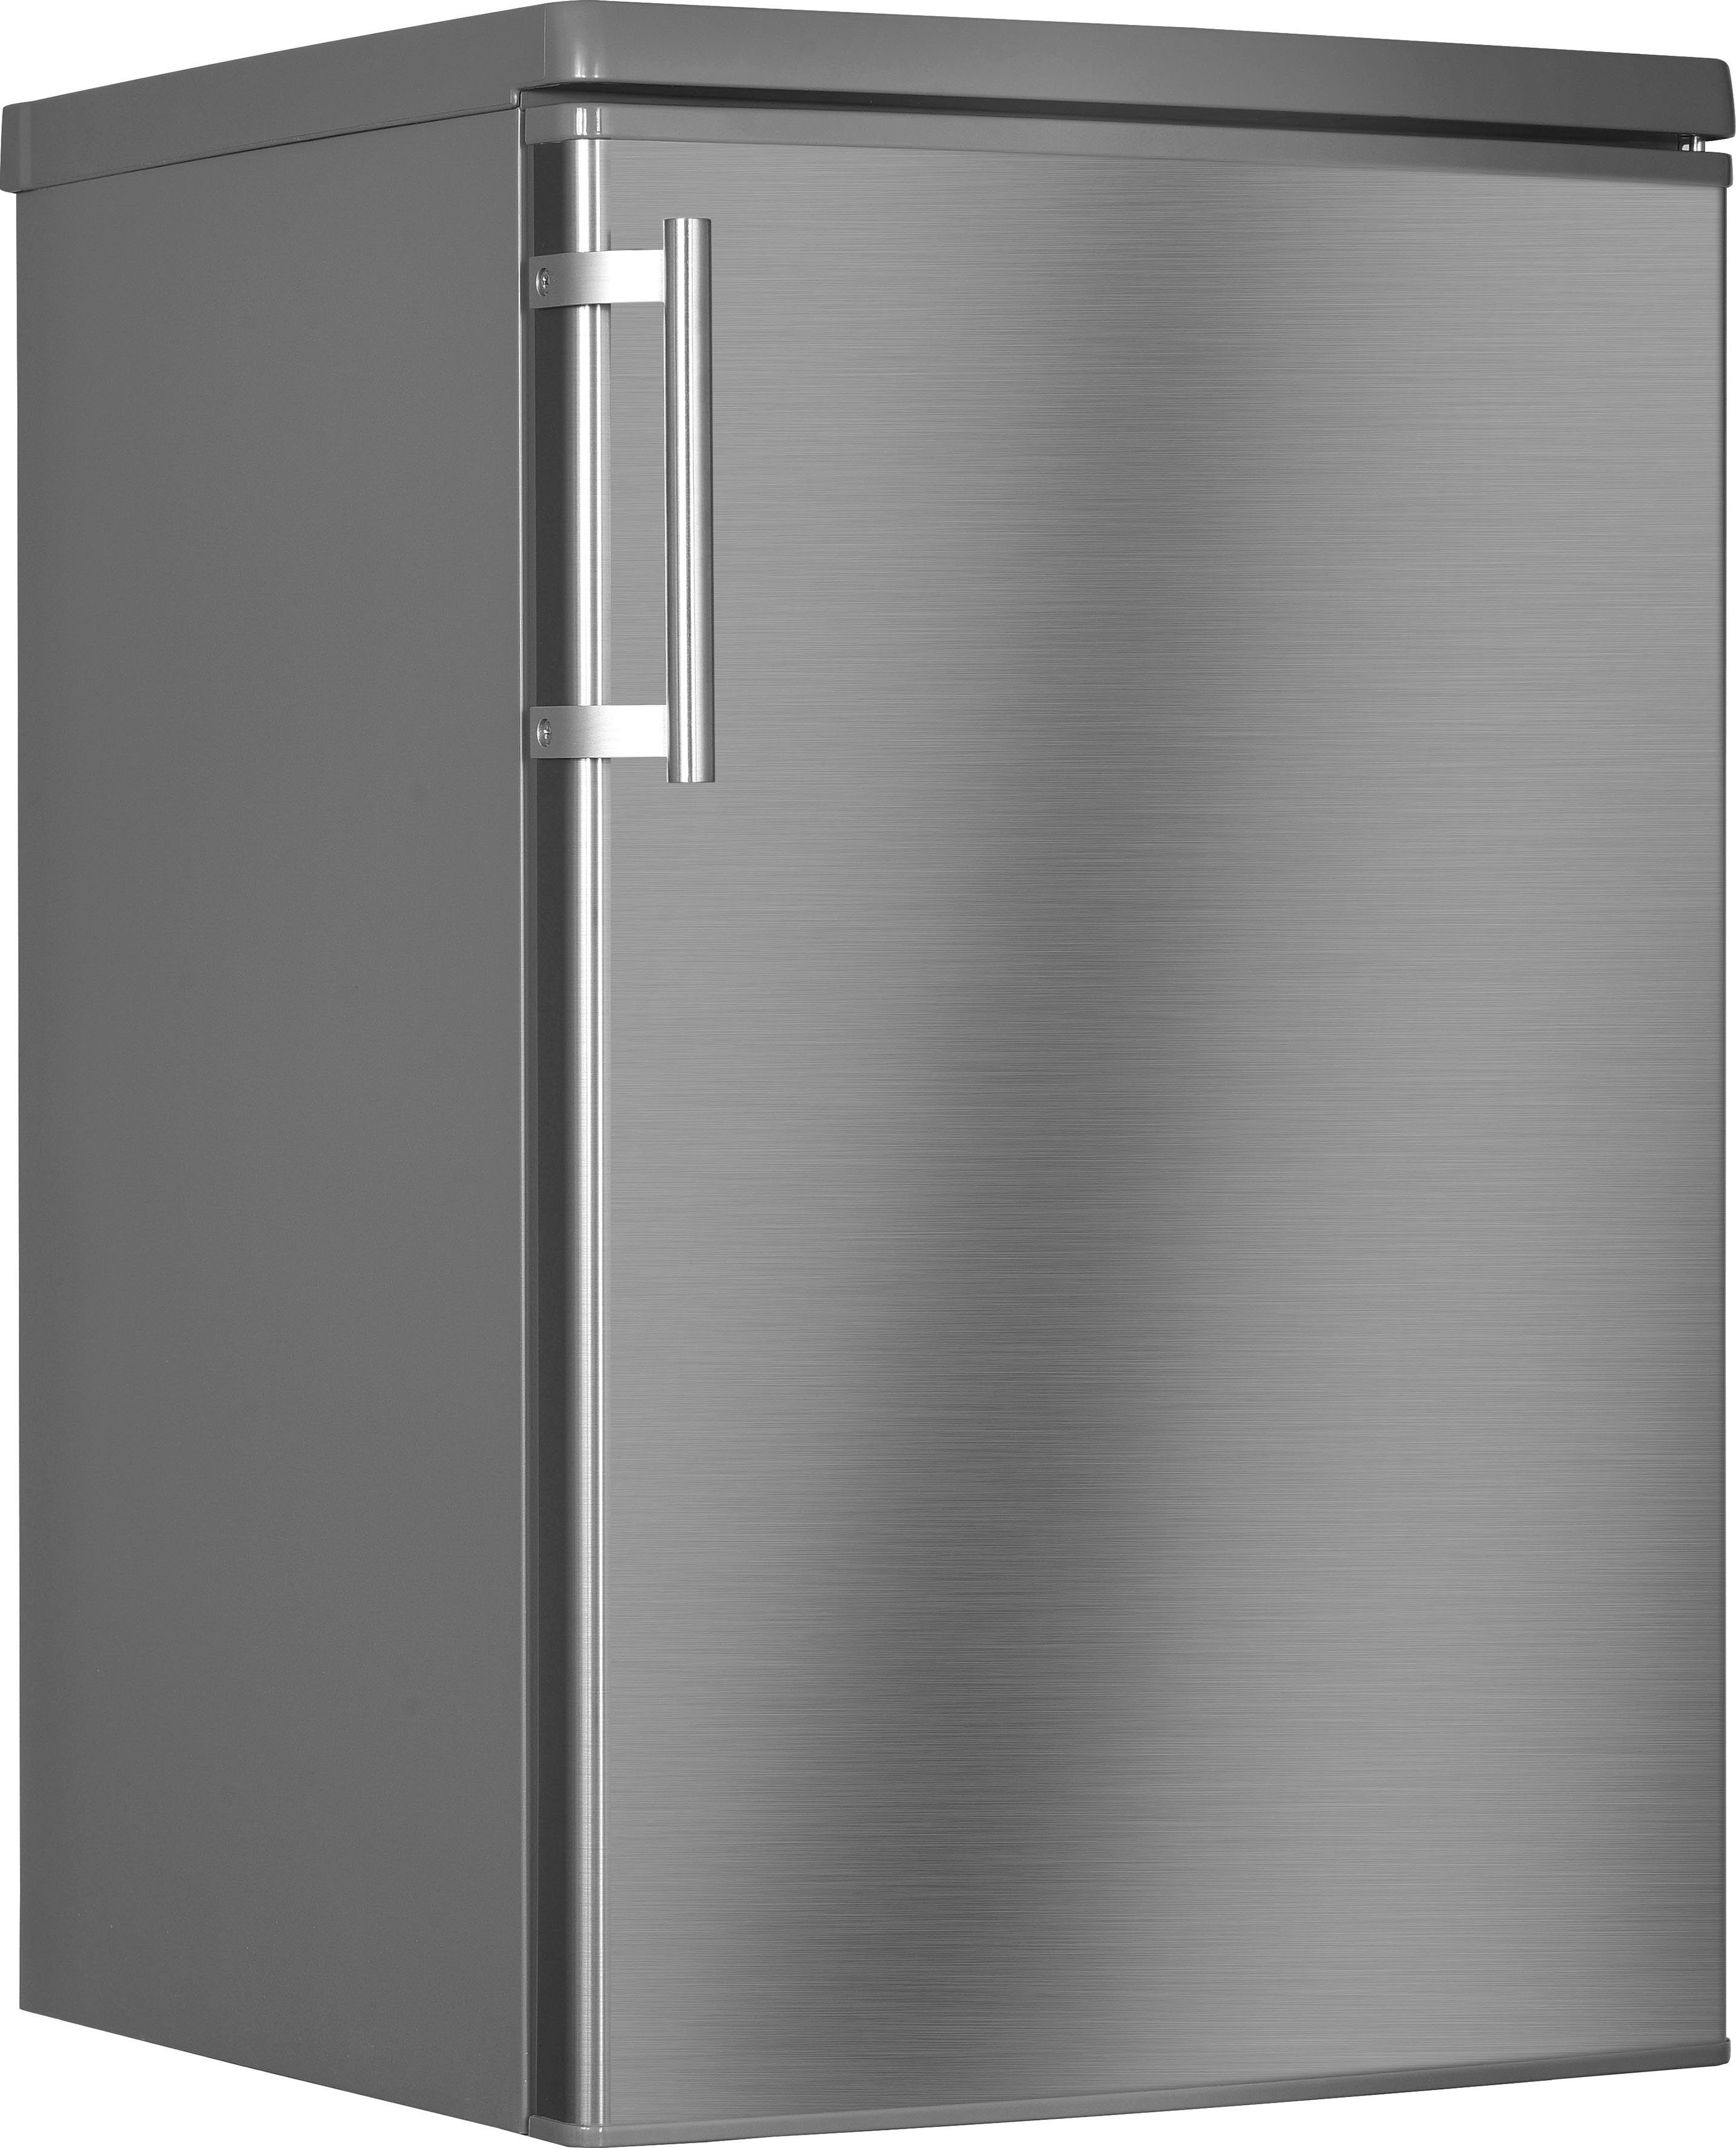 Hanseatic Kühlschrank HKS8555GDI-2, 85 cm hoch, 55 cm breit